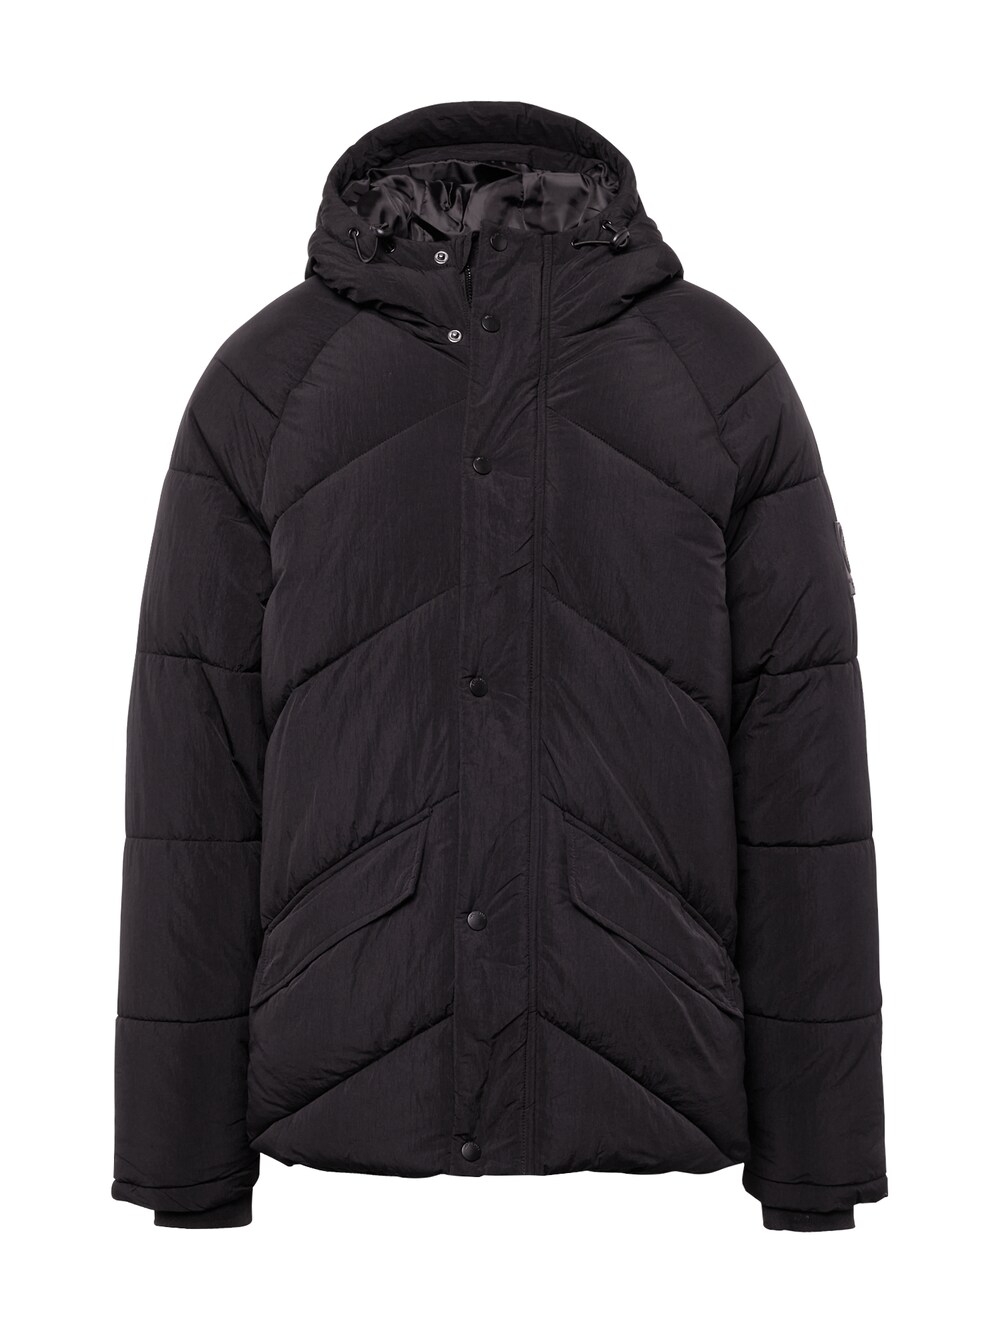 Межсезонная куртка BURTON MENSWEAR LONDON Diagonal, черный набор burton abckl mounting hardware черный 20